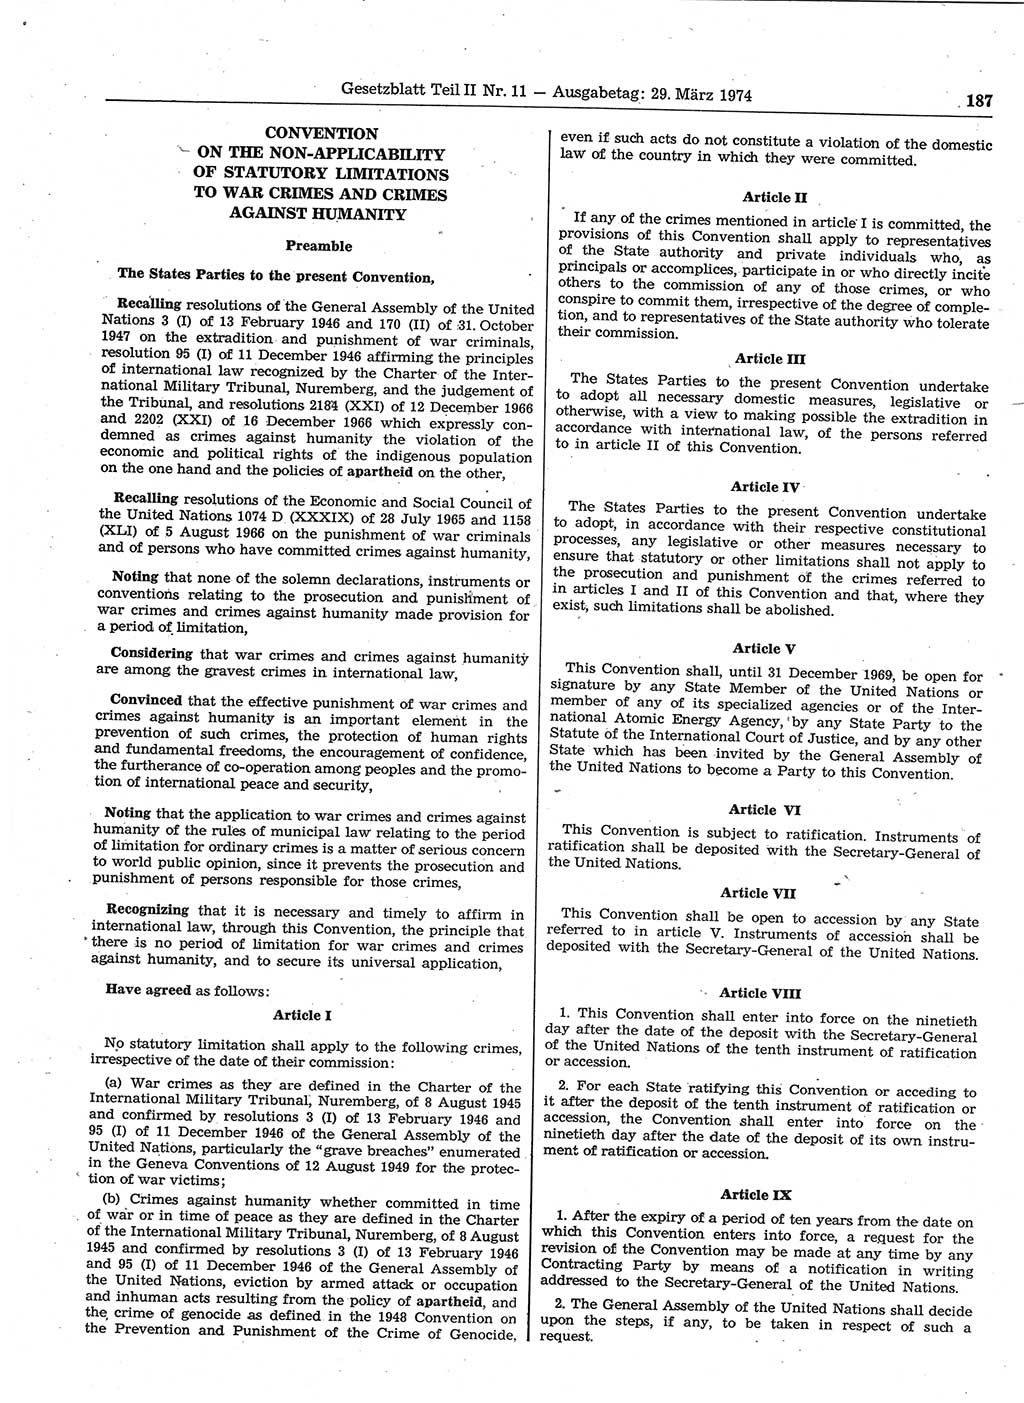 Gesetzblatt (GBl.) der Deutschen Demokratischen Republik (DDR) Teil ⅠⅠ 1974, Seite 187 (GBl. DDR ⅠⅠ 1974, S. 187)